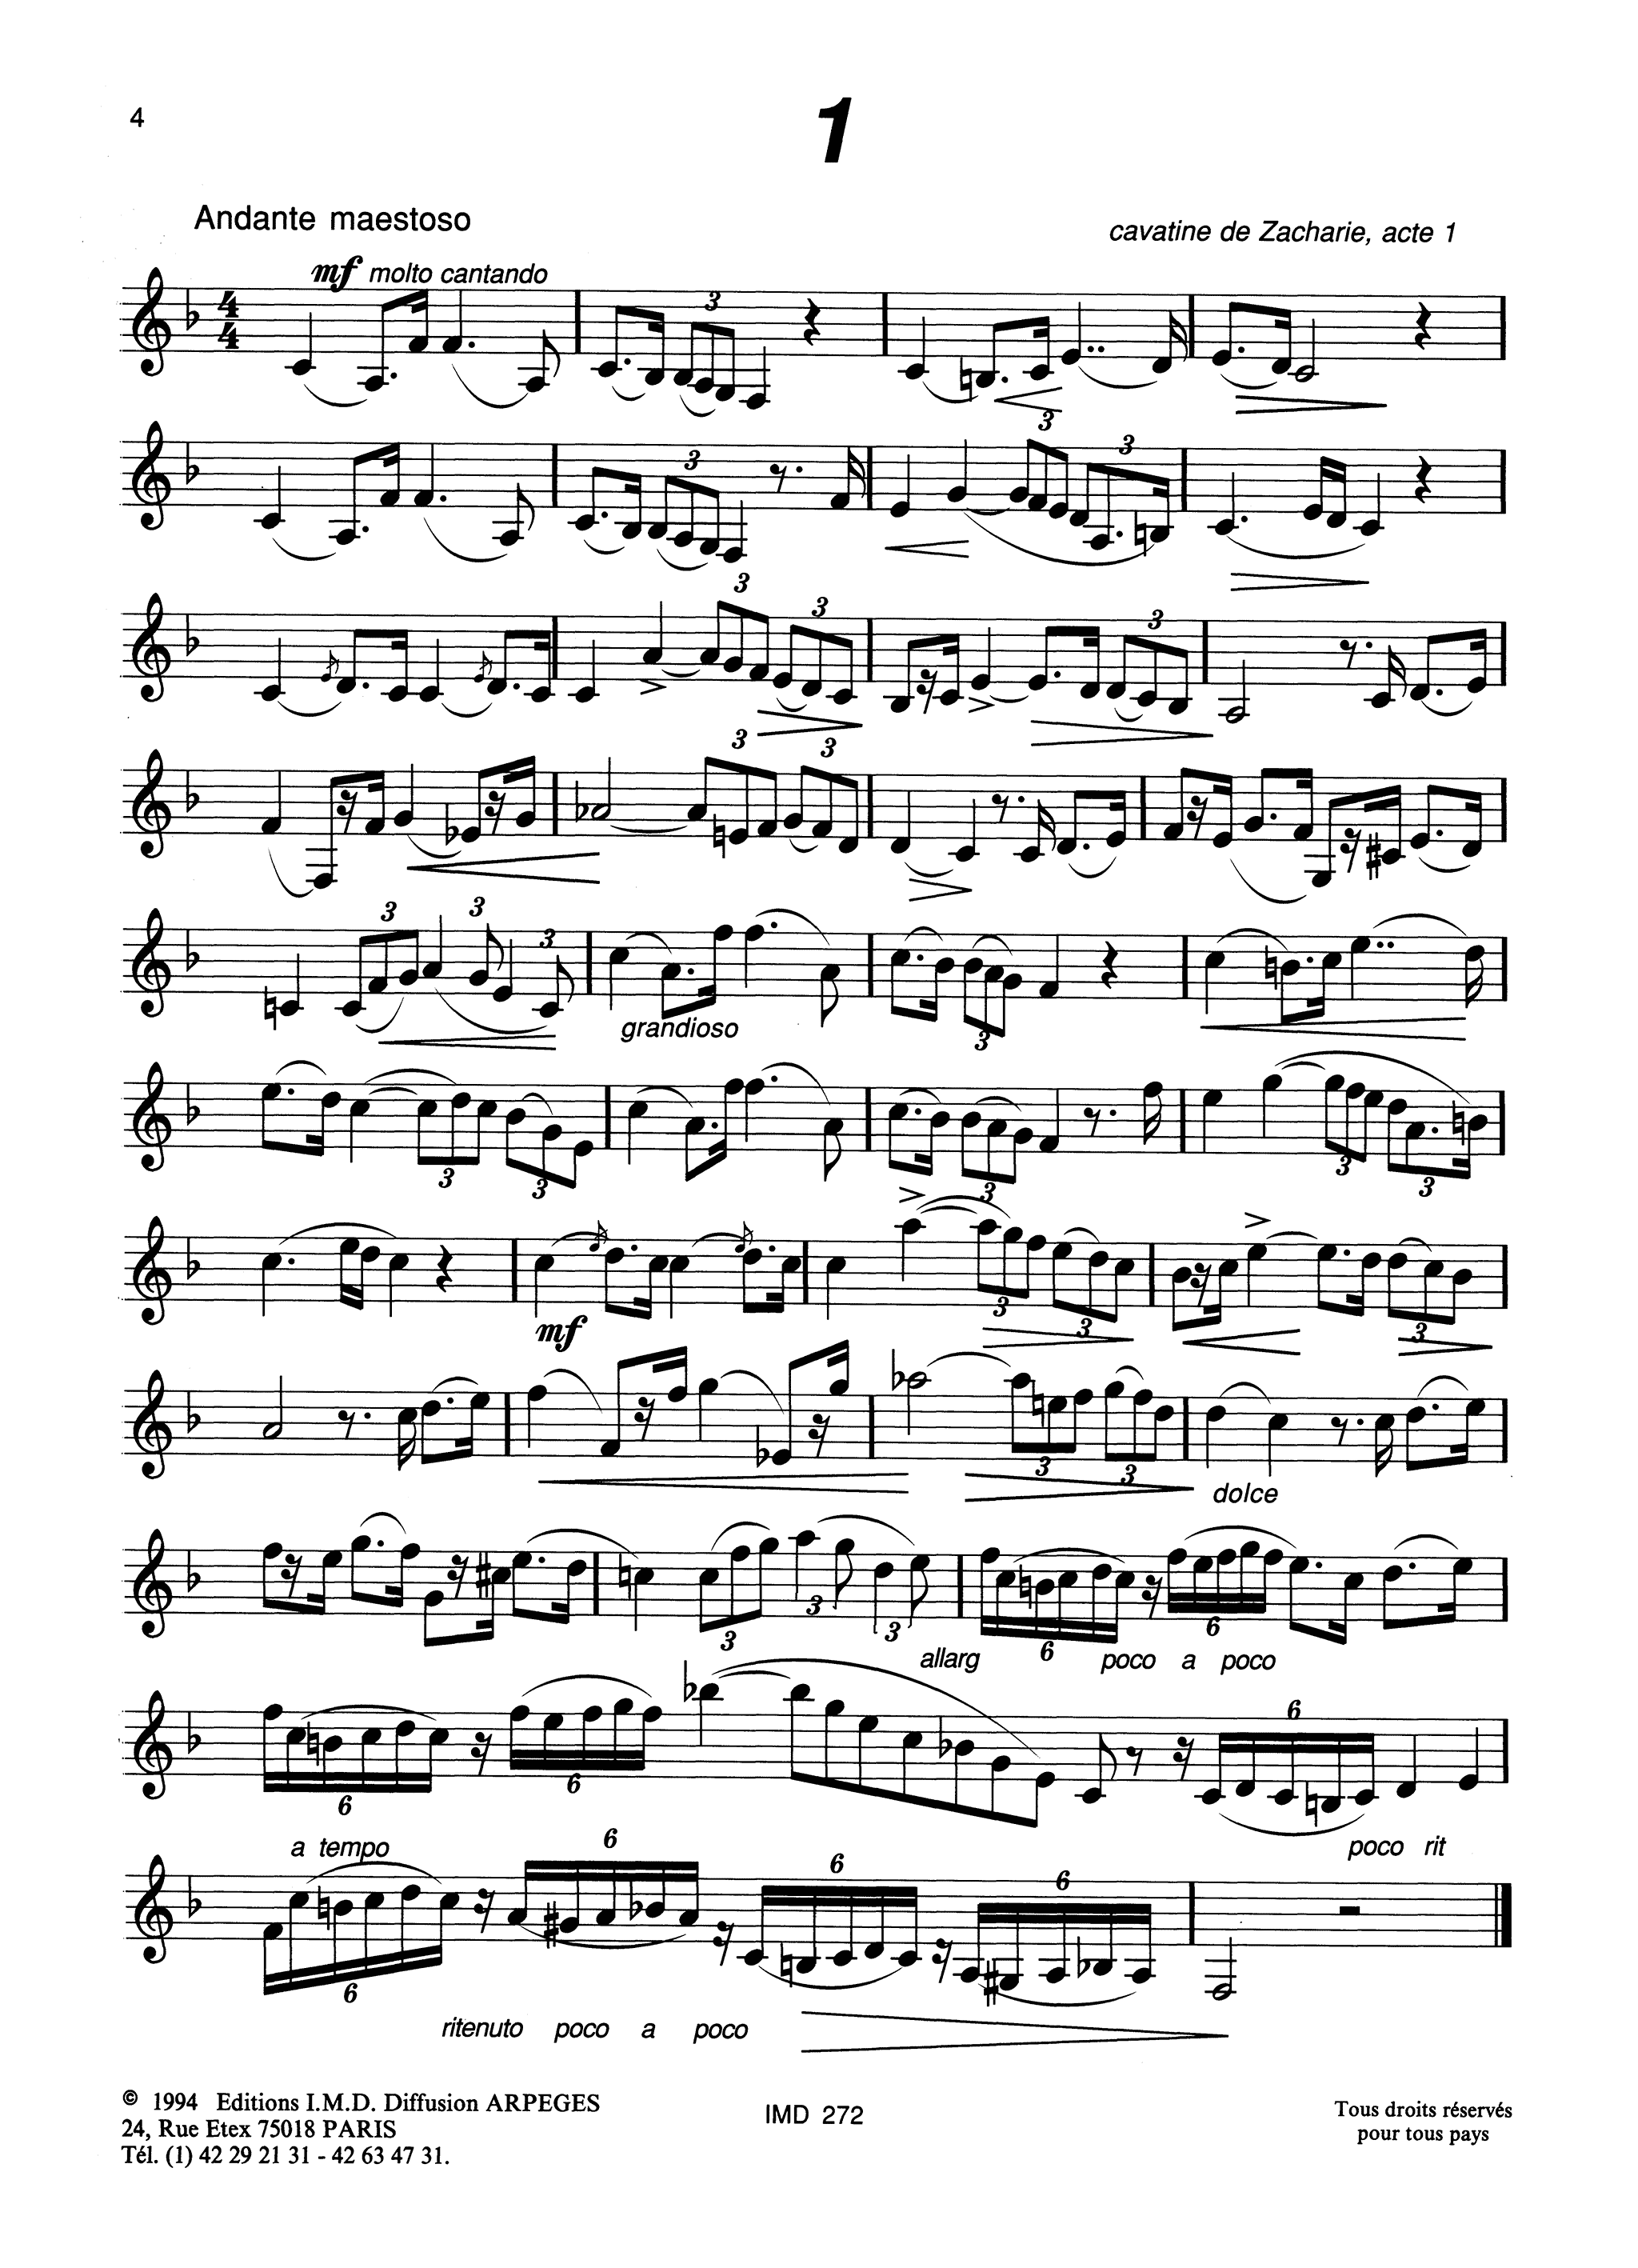 33 Études after Verdi Page 4